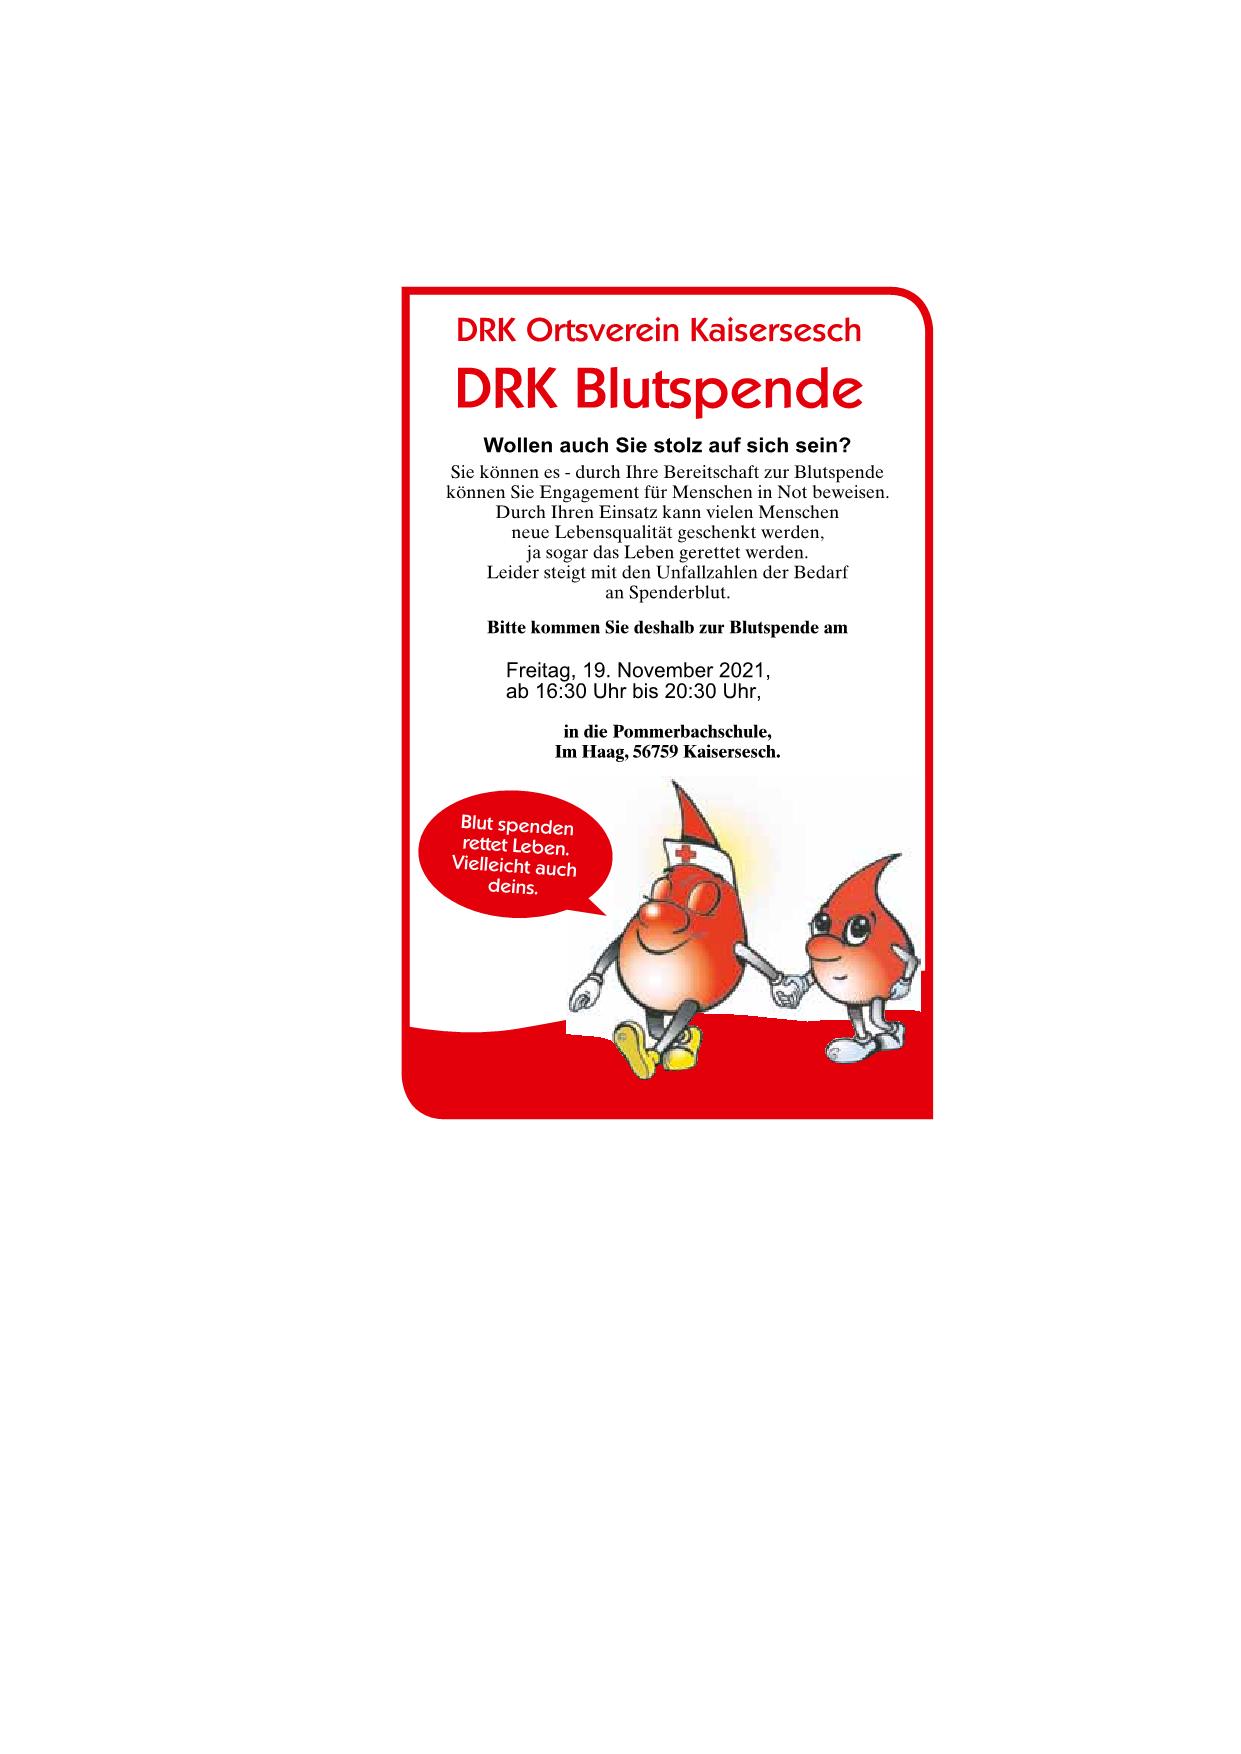 DRK Blutspende Kaisersesch 44 45 kw 2021003 1